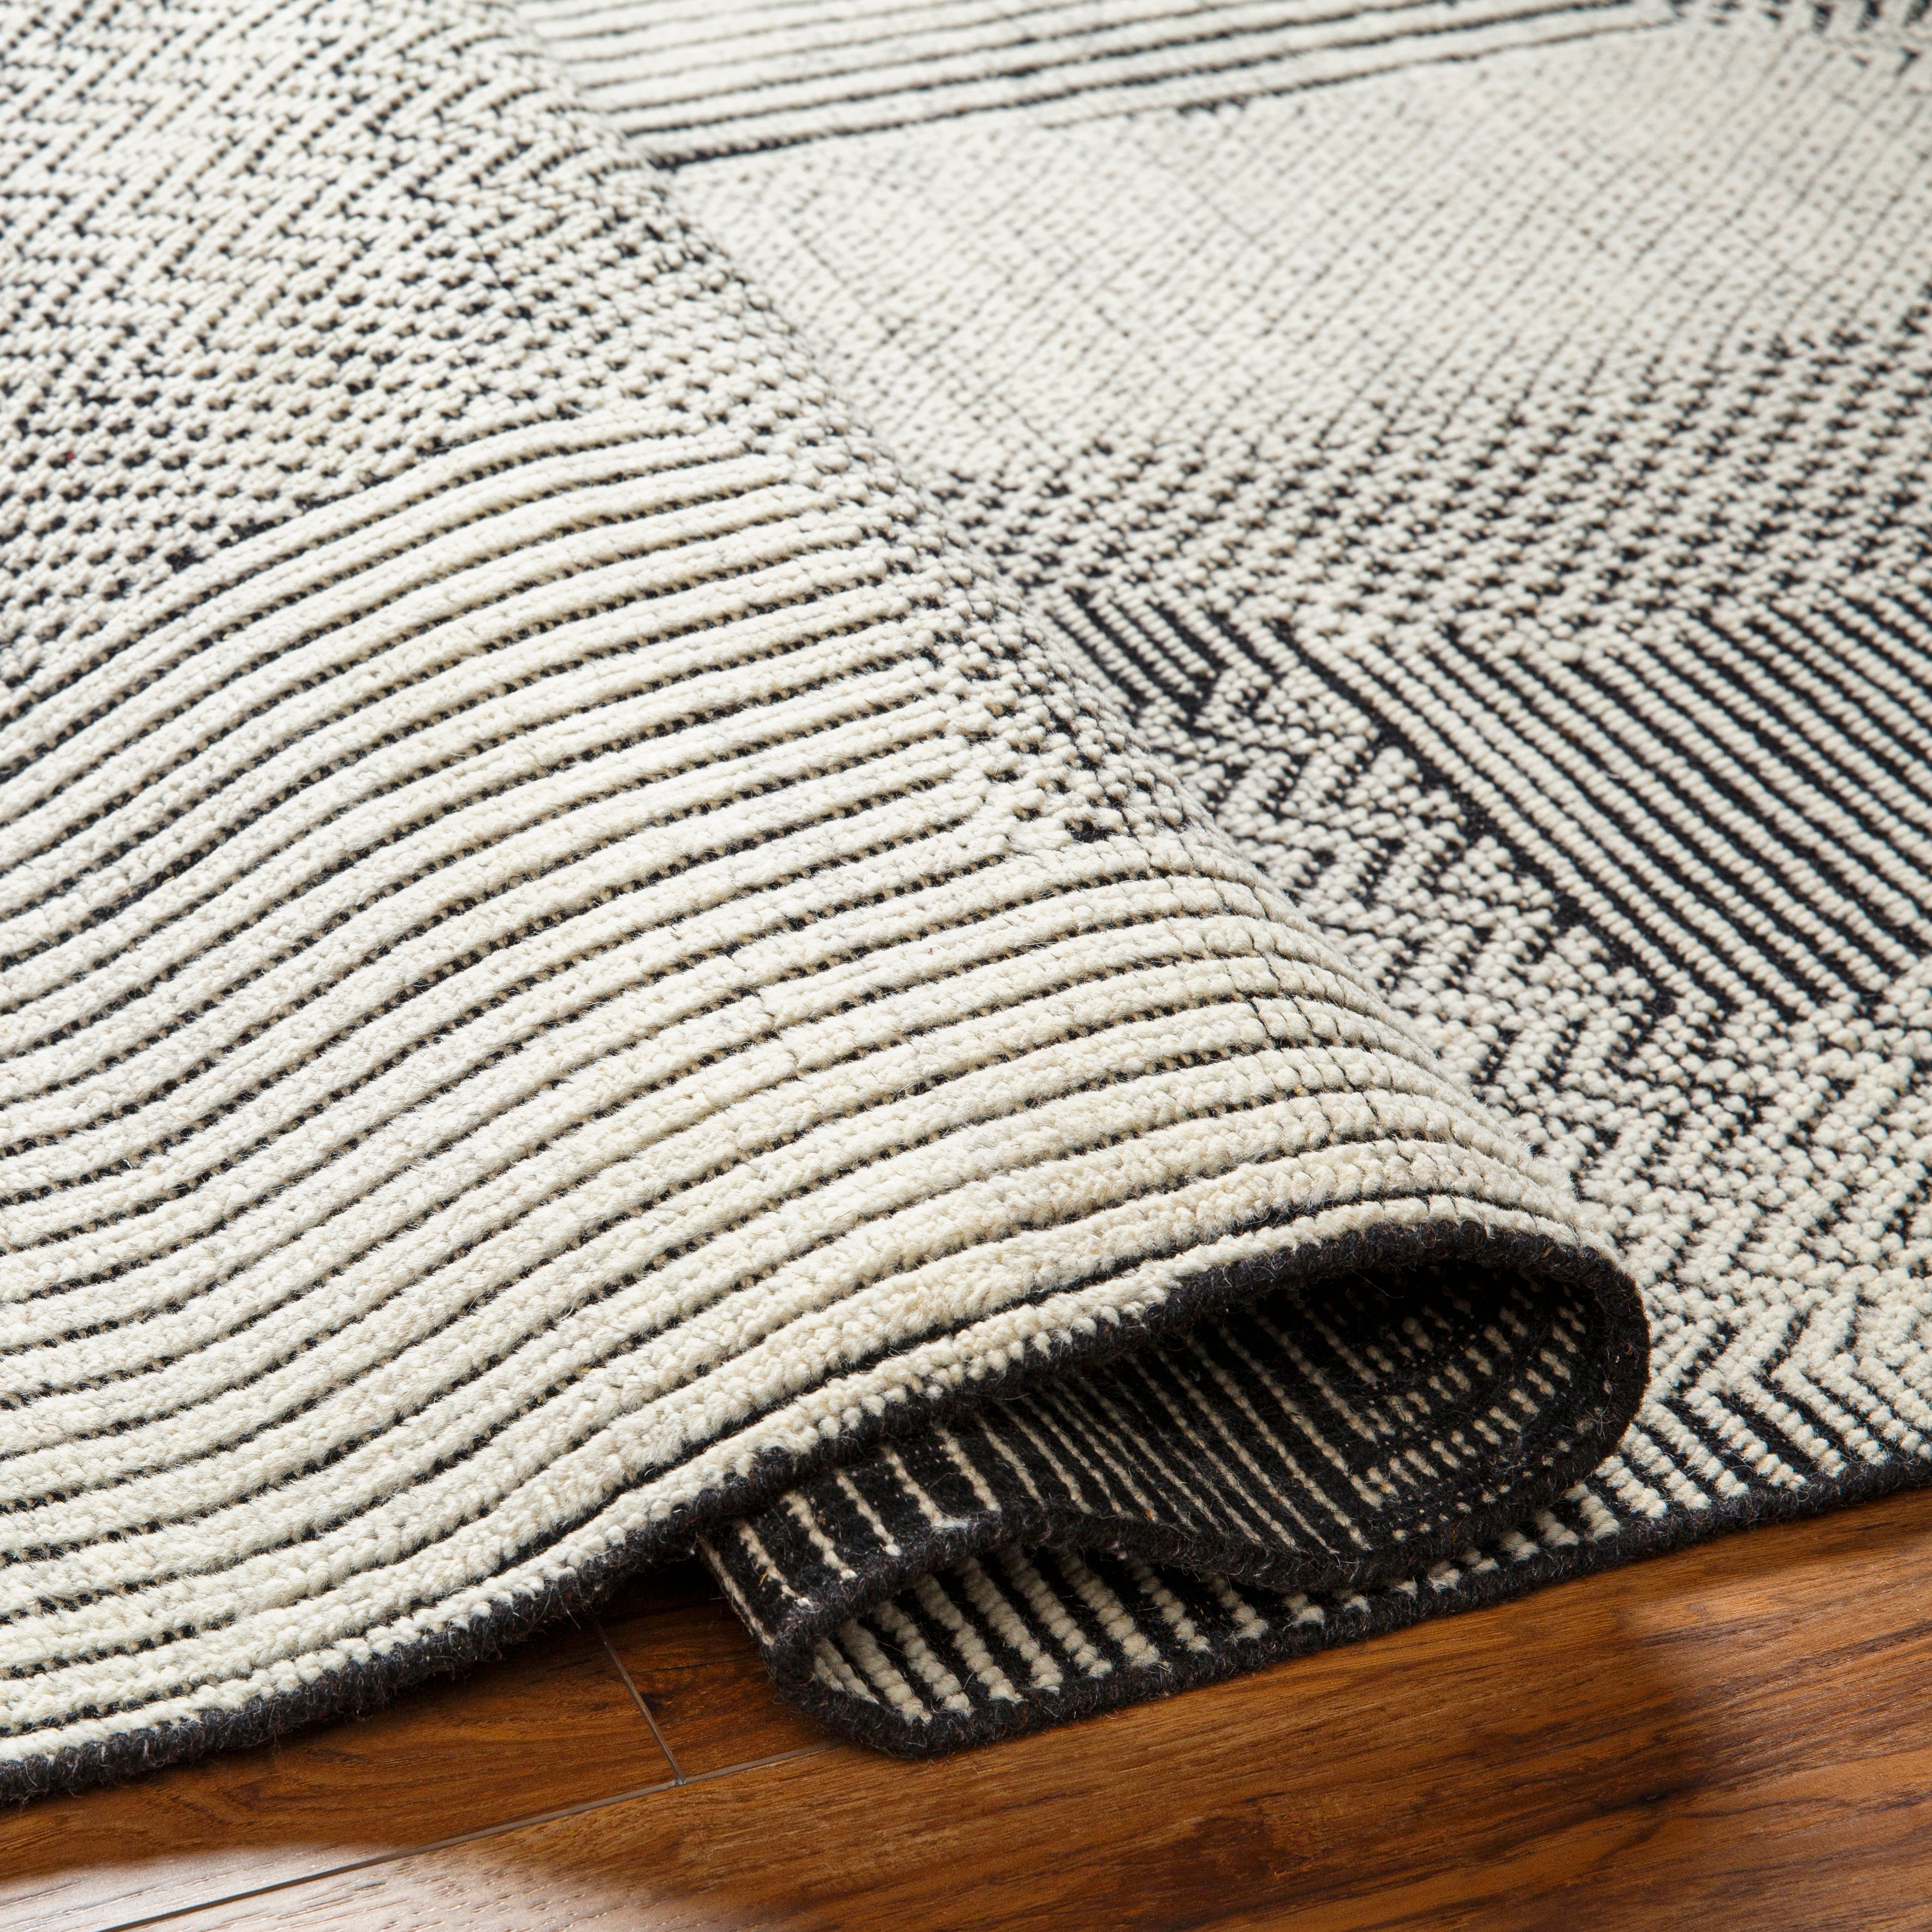 The Tunus Wool Rug